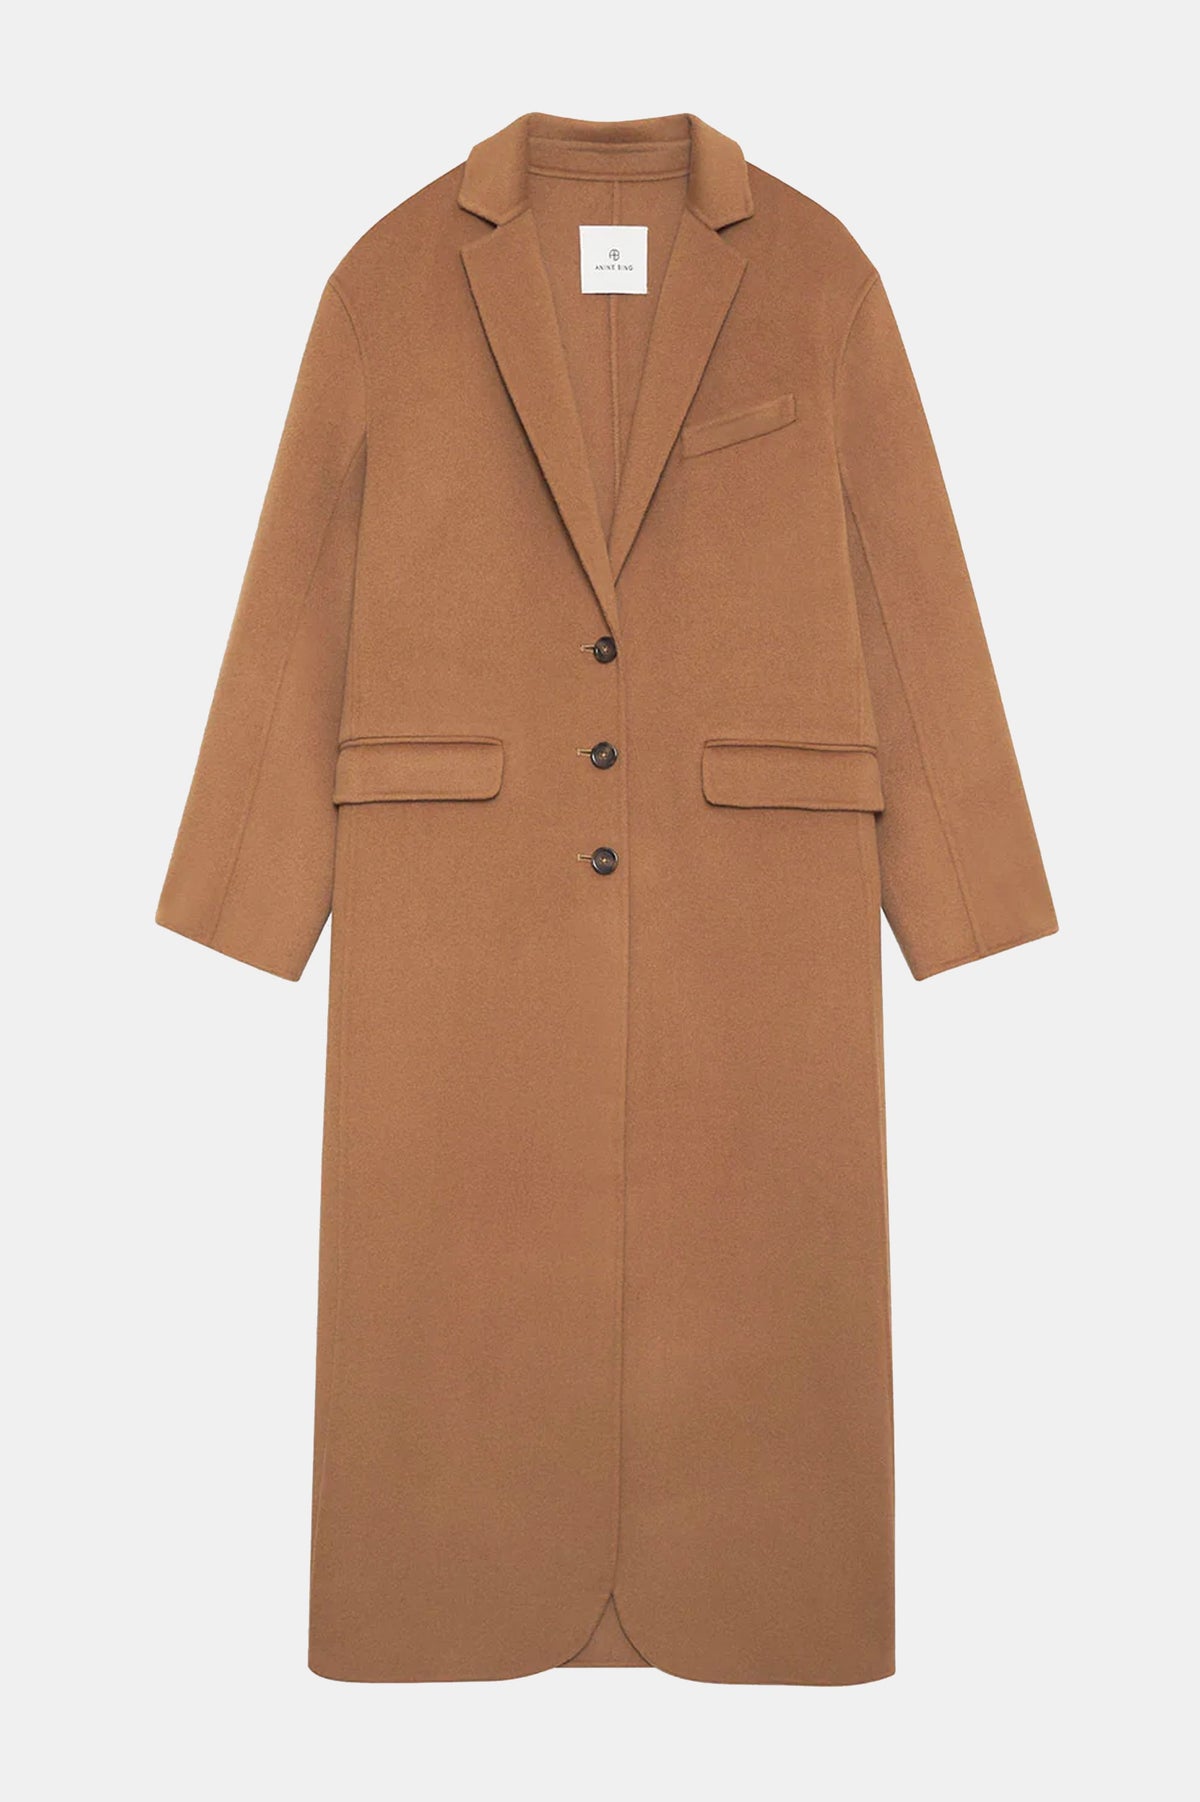 Quinn Coat in Camel Cashmere Blend